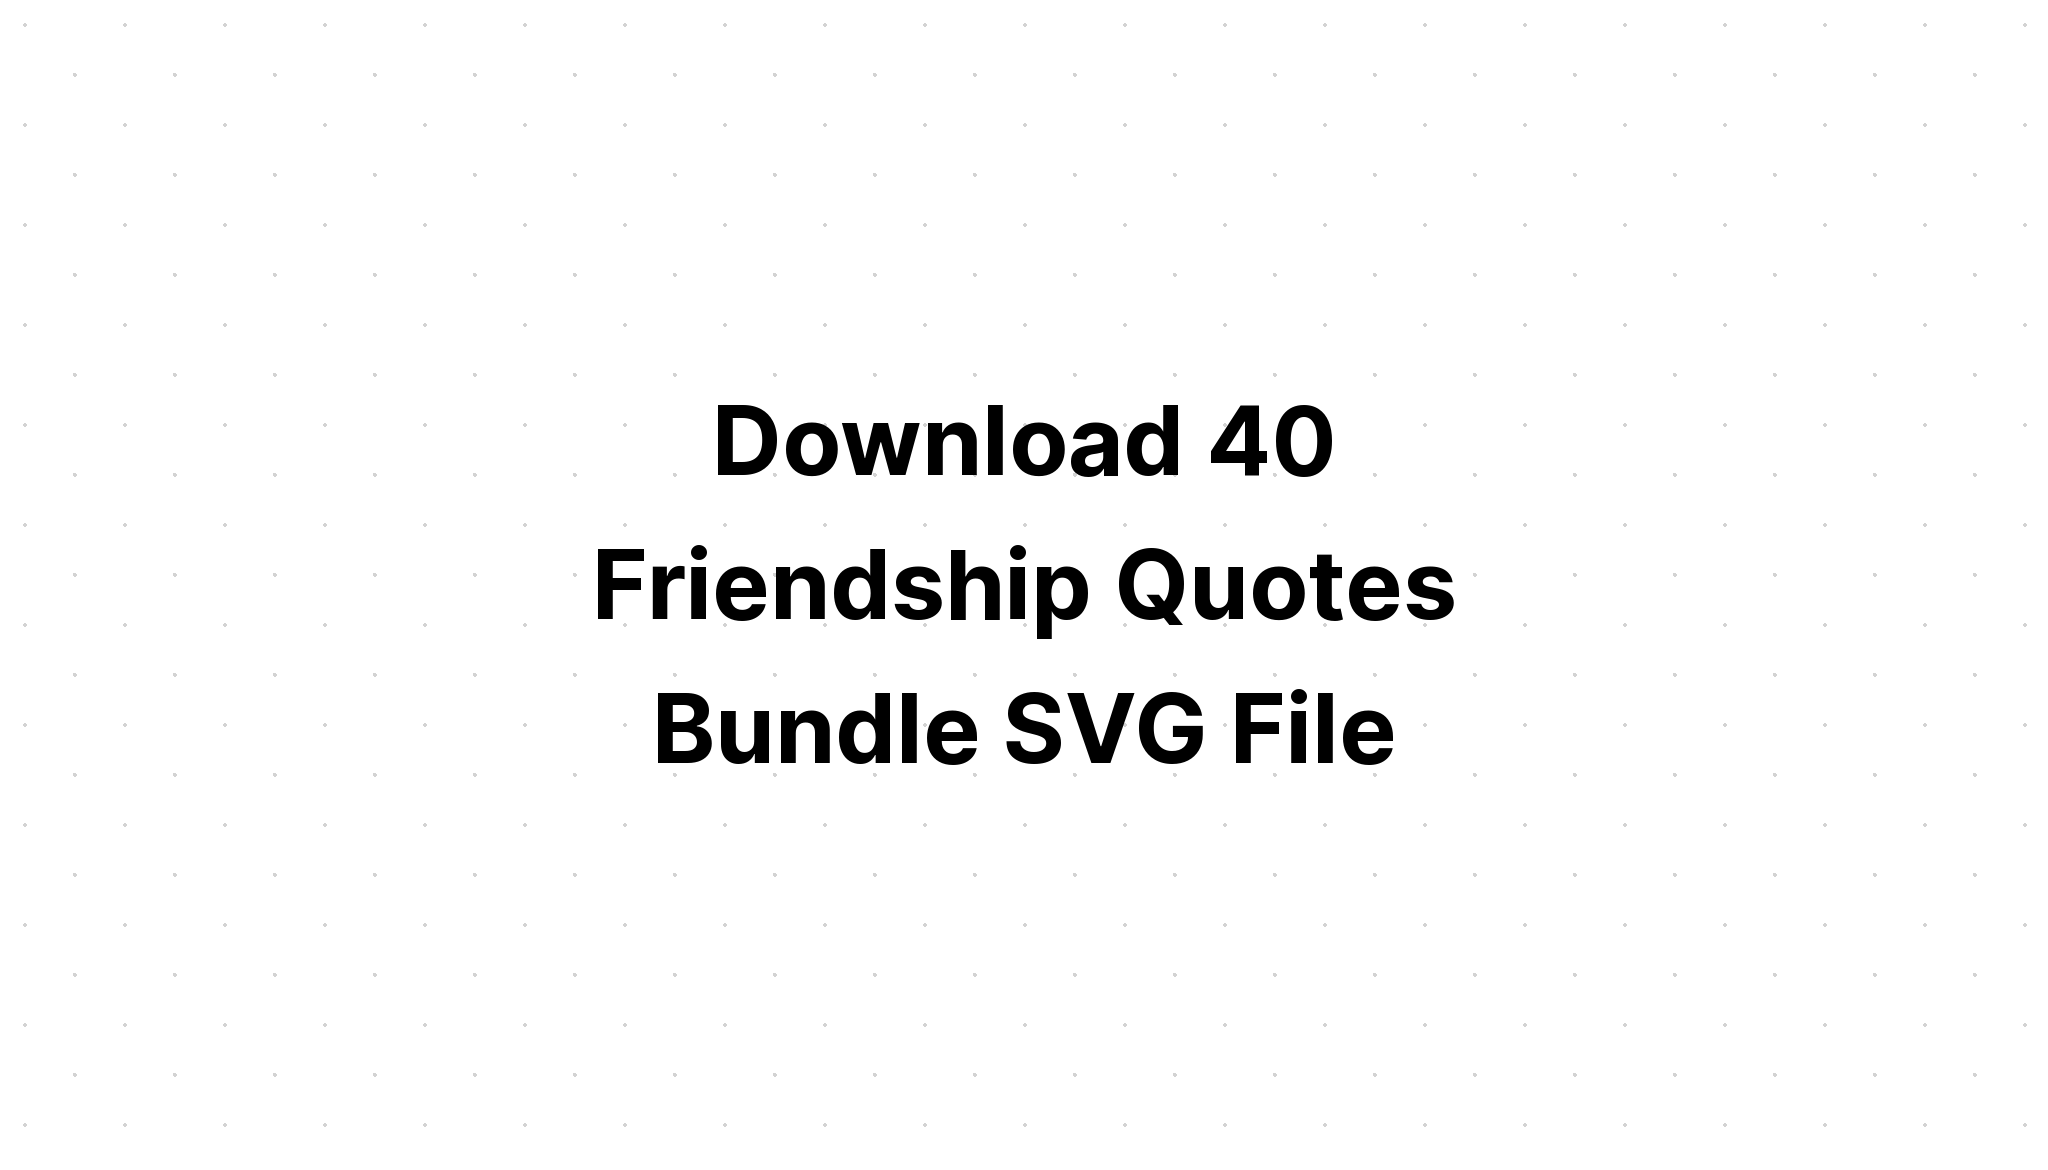 Download 40 Friendship Quotes Bundle SVG File